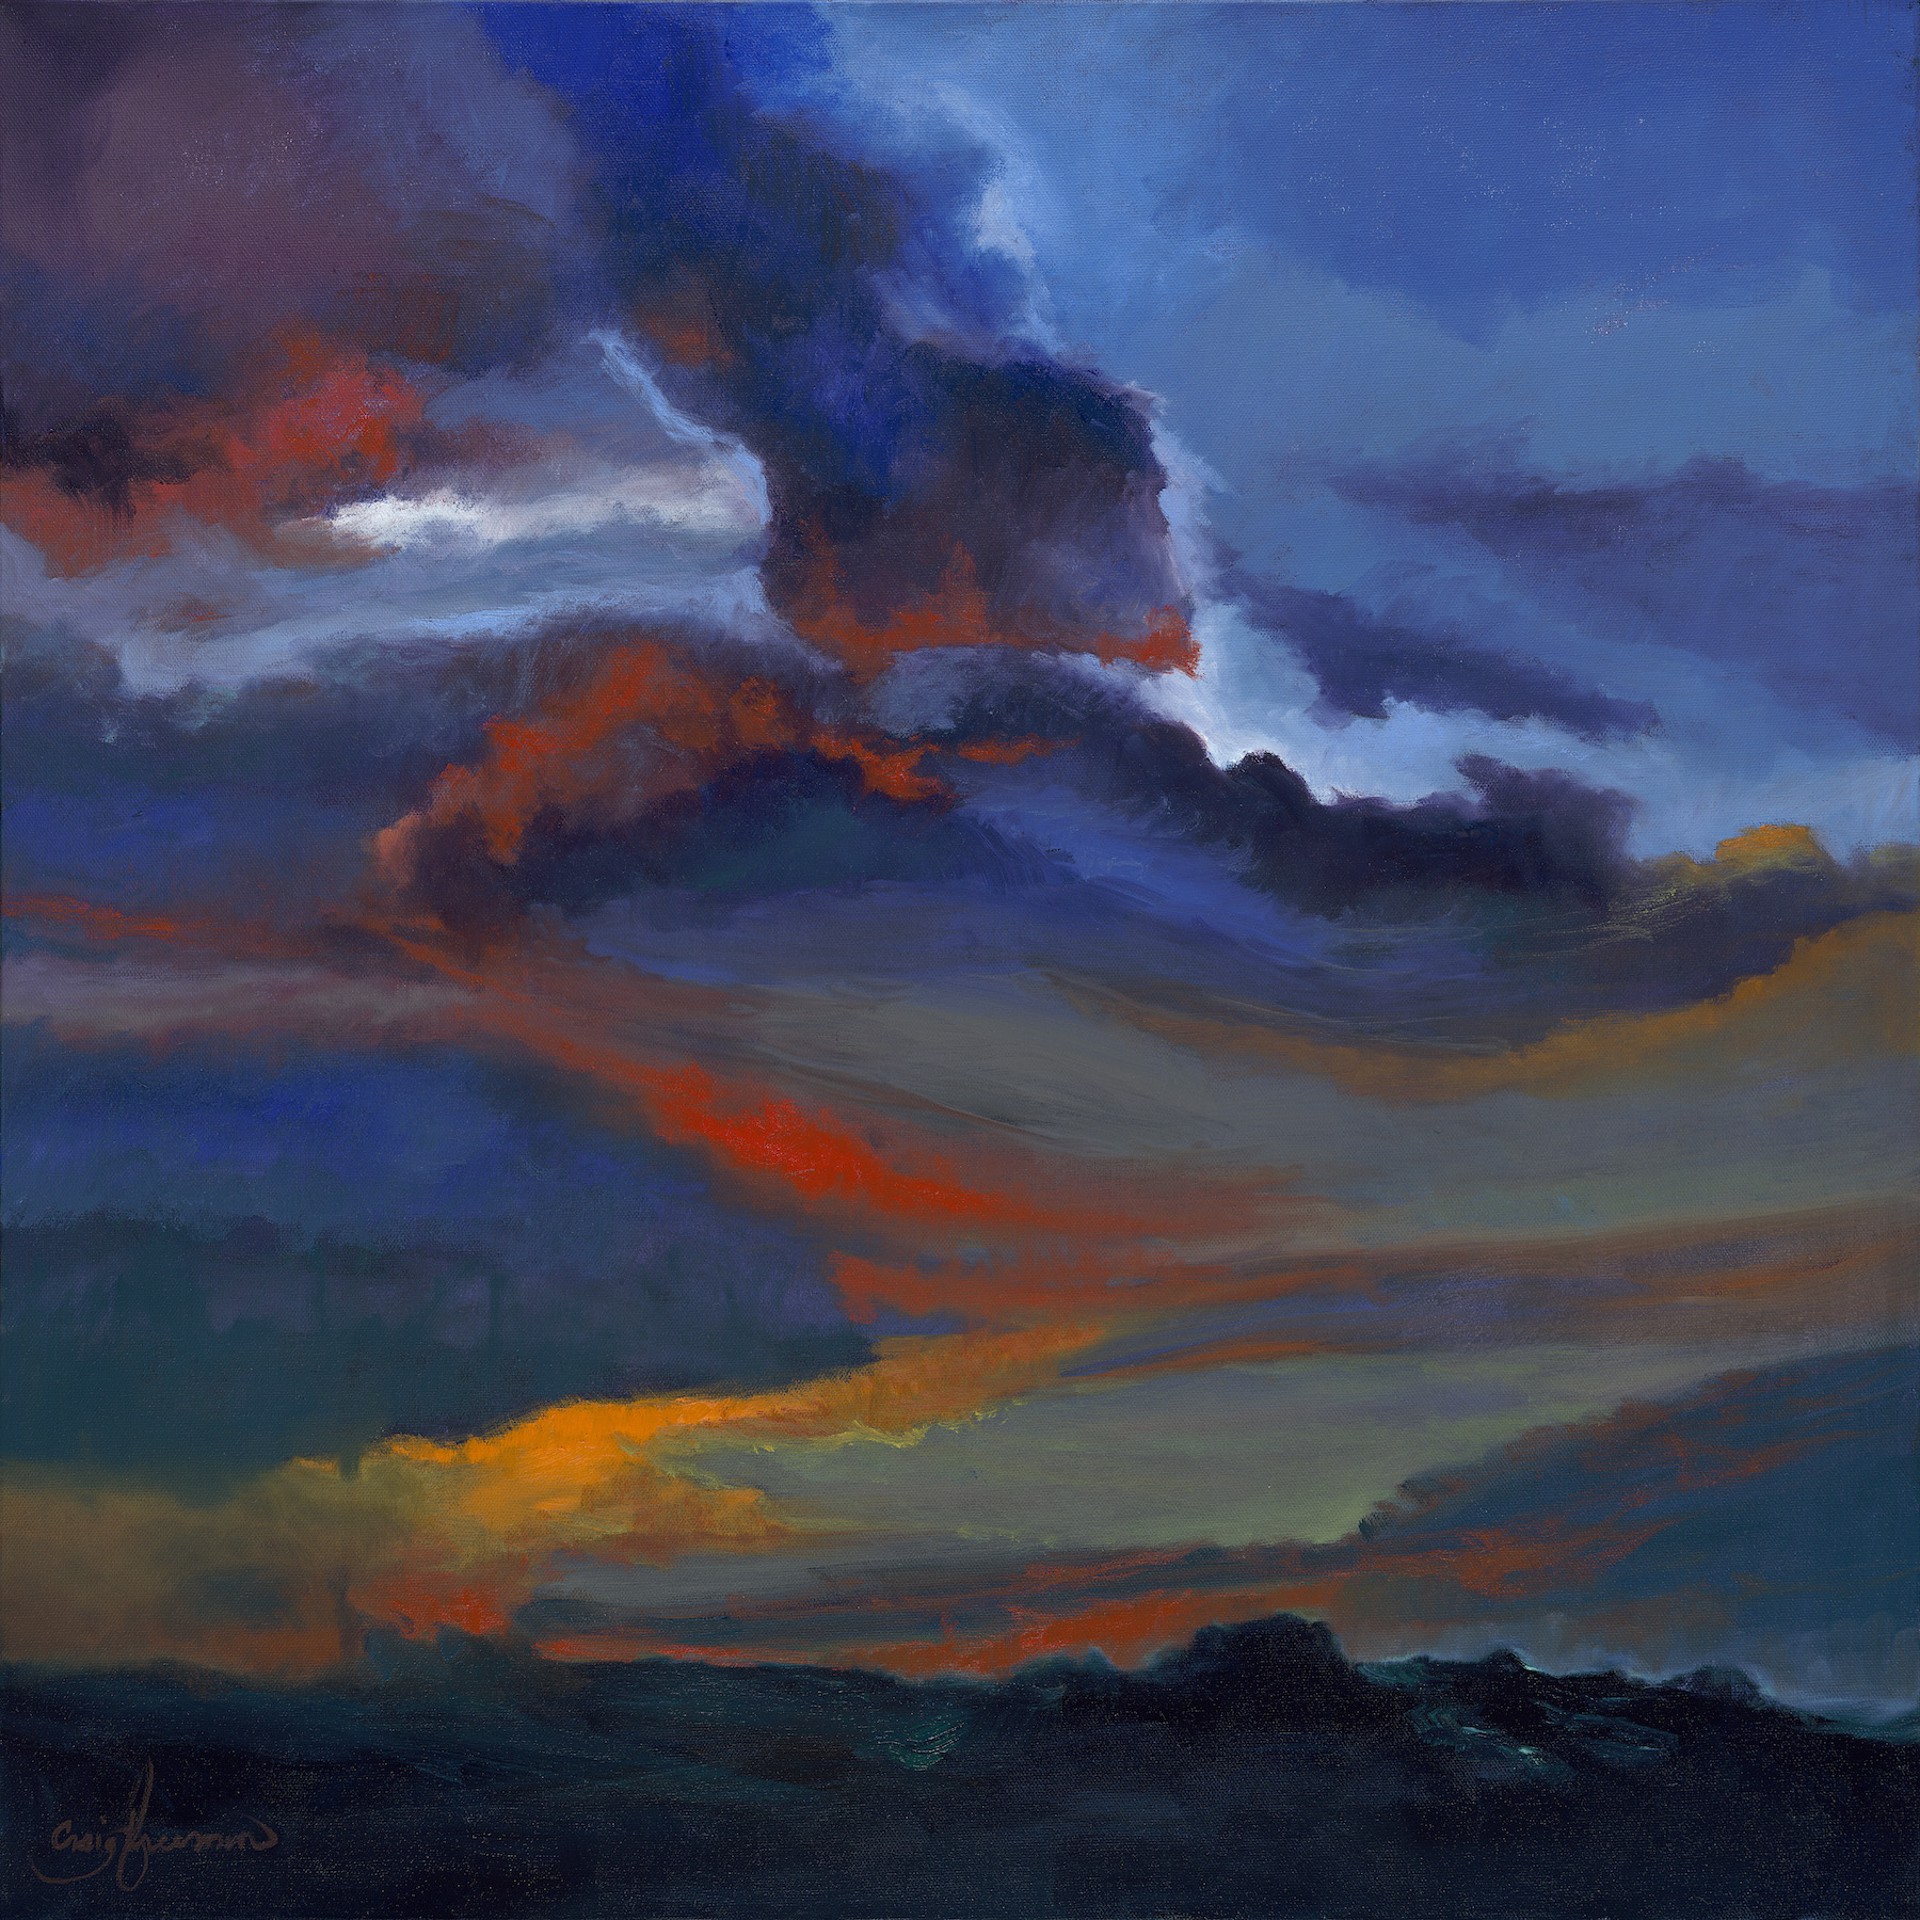 Stormy Fall by Craig Freeman